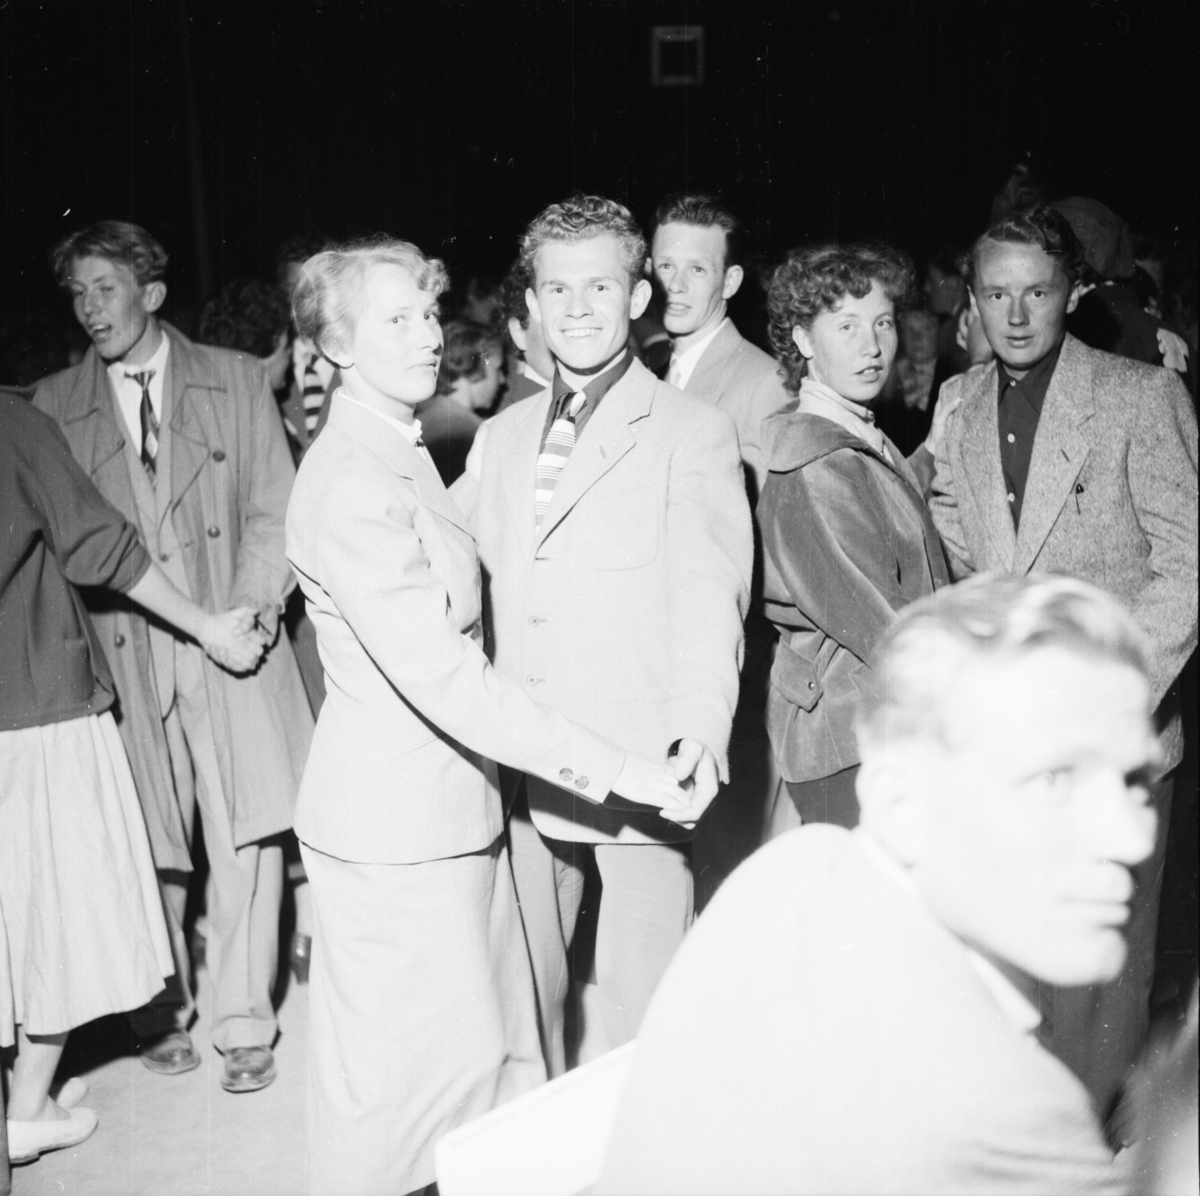 Vardens arkiv. "Byfor. arrangert i Brekkeparken"  26.05.1954